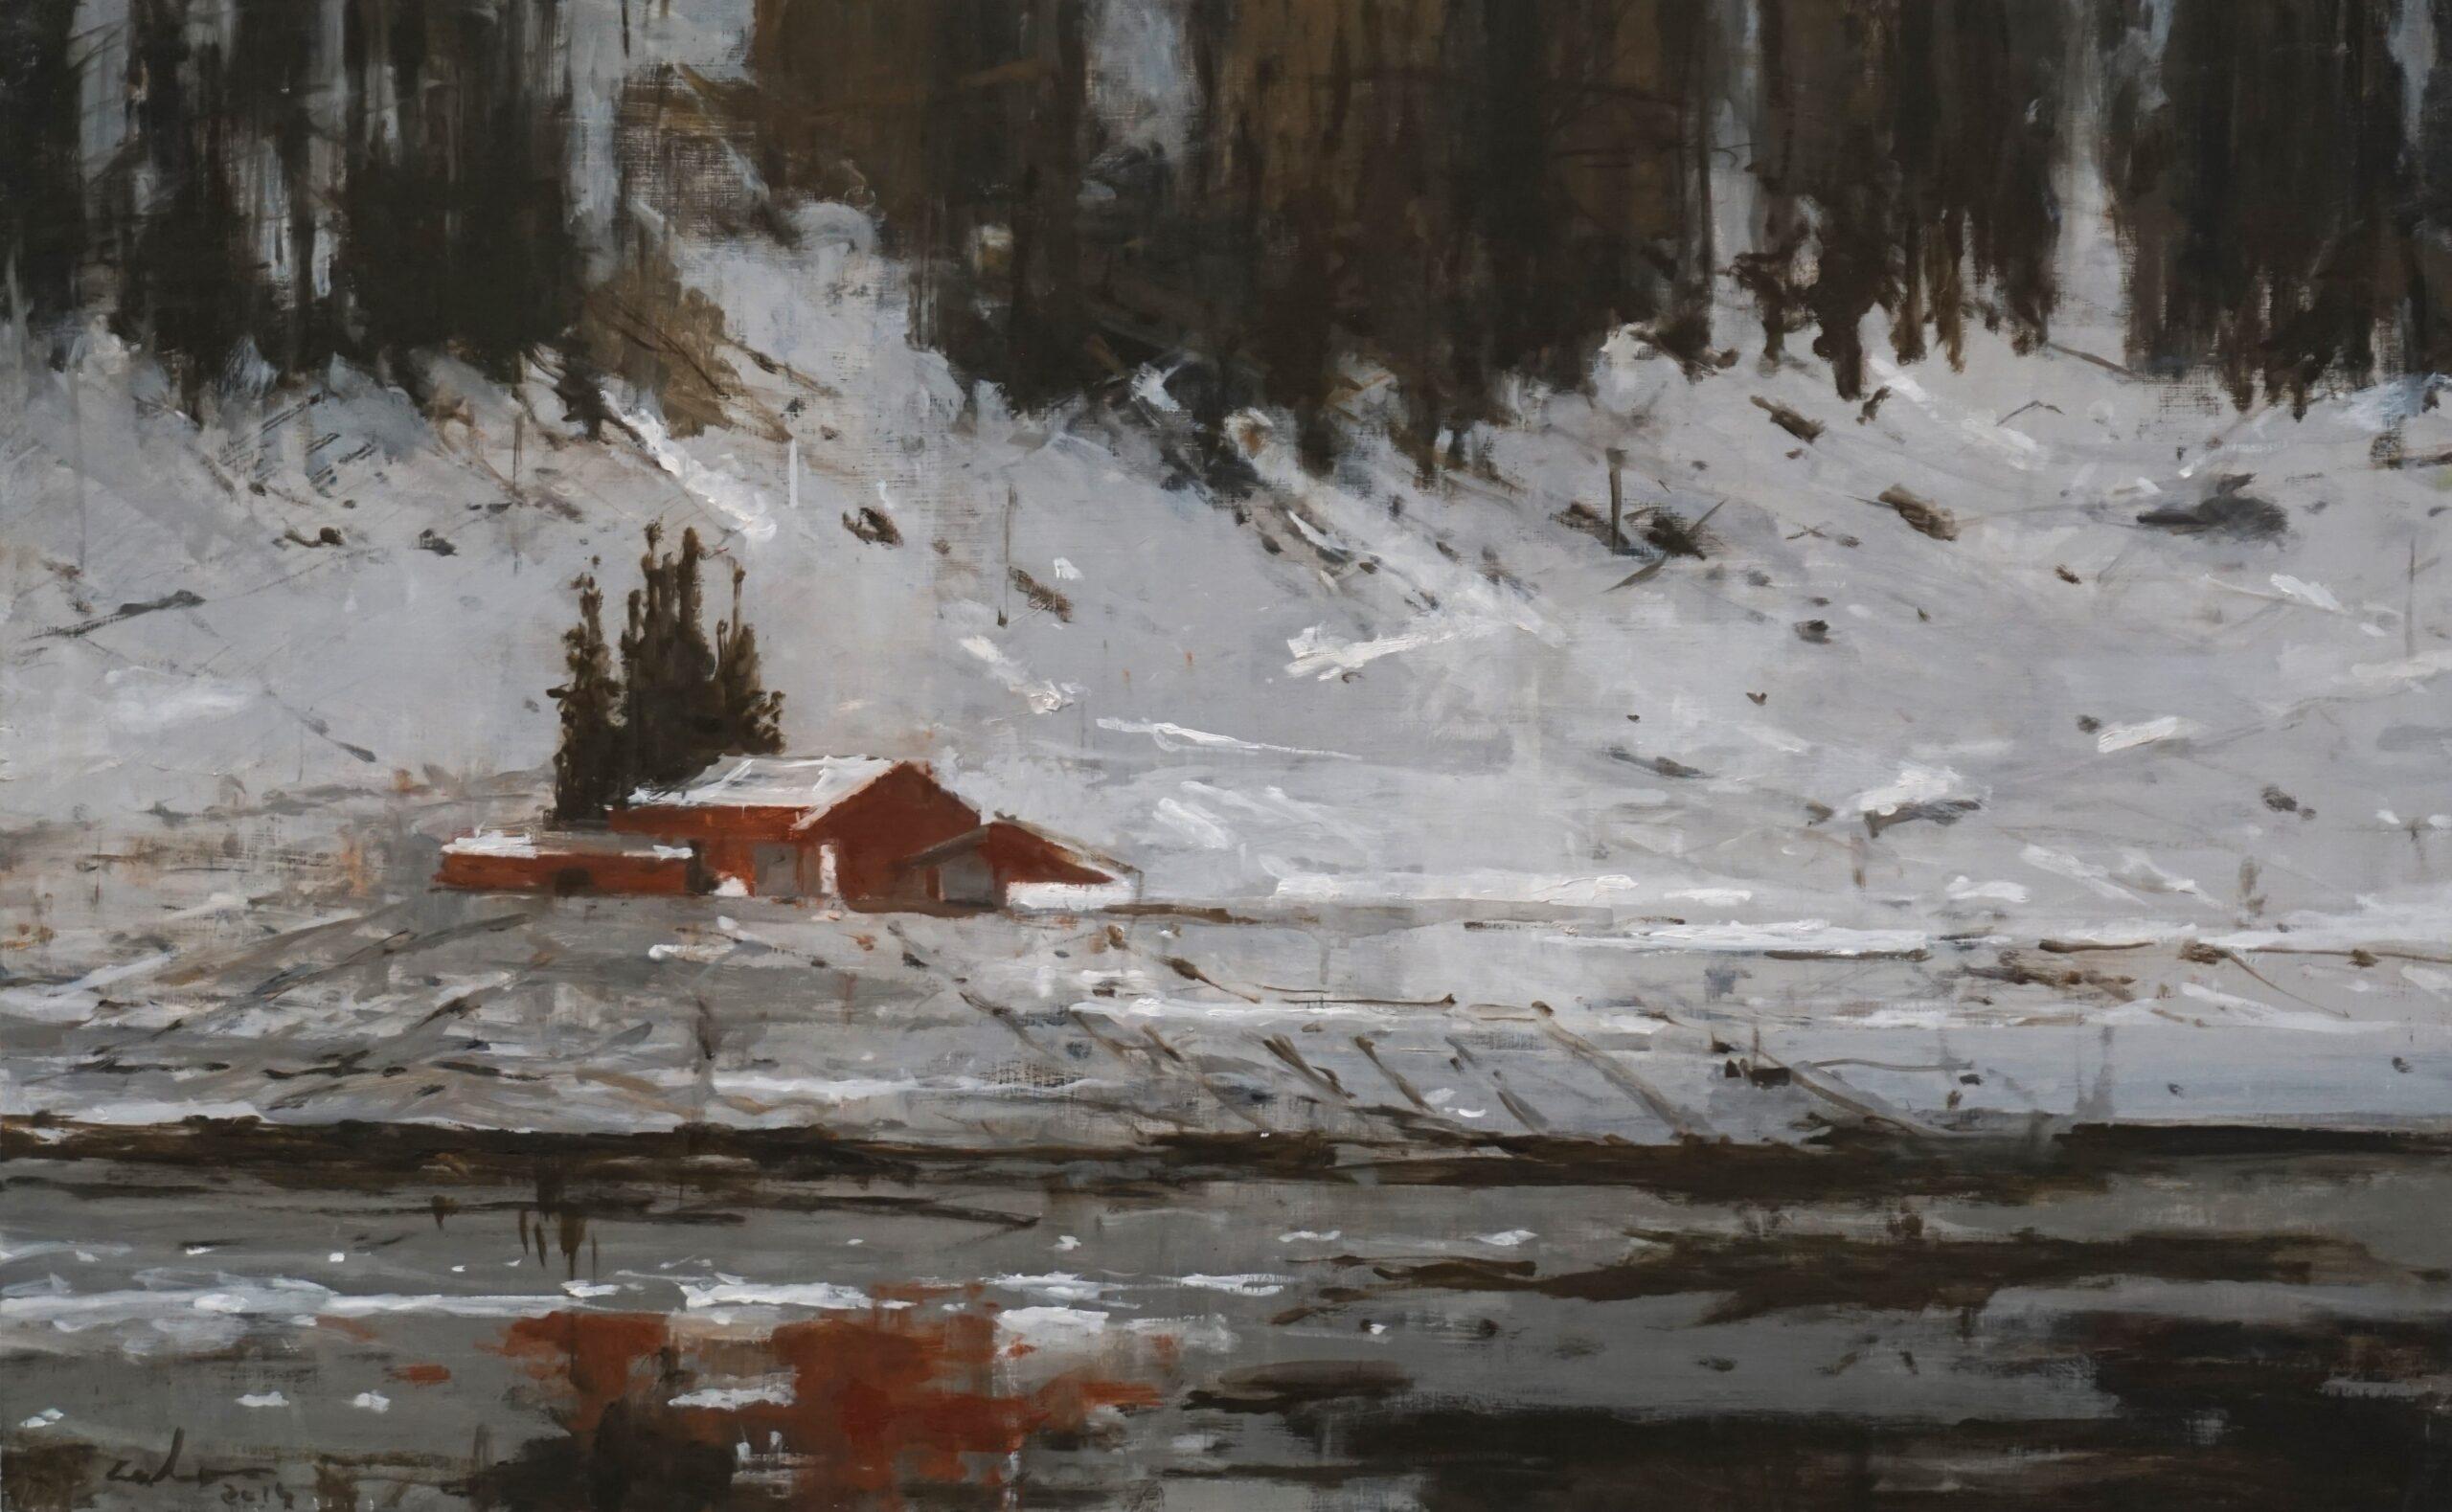 Calo Carratalá Landscape Painting - Red Houses No. 1, Norway by Calo Carratala - Snowy landscape painting